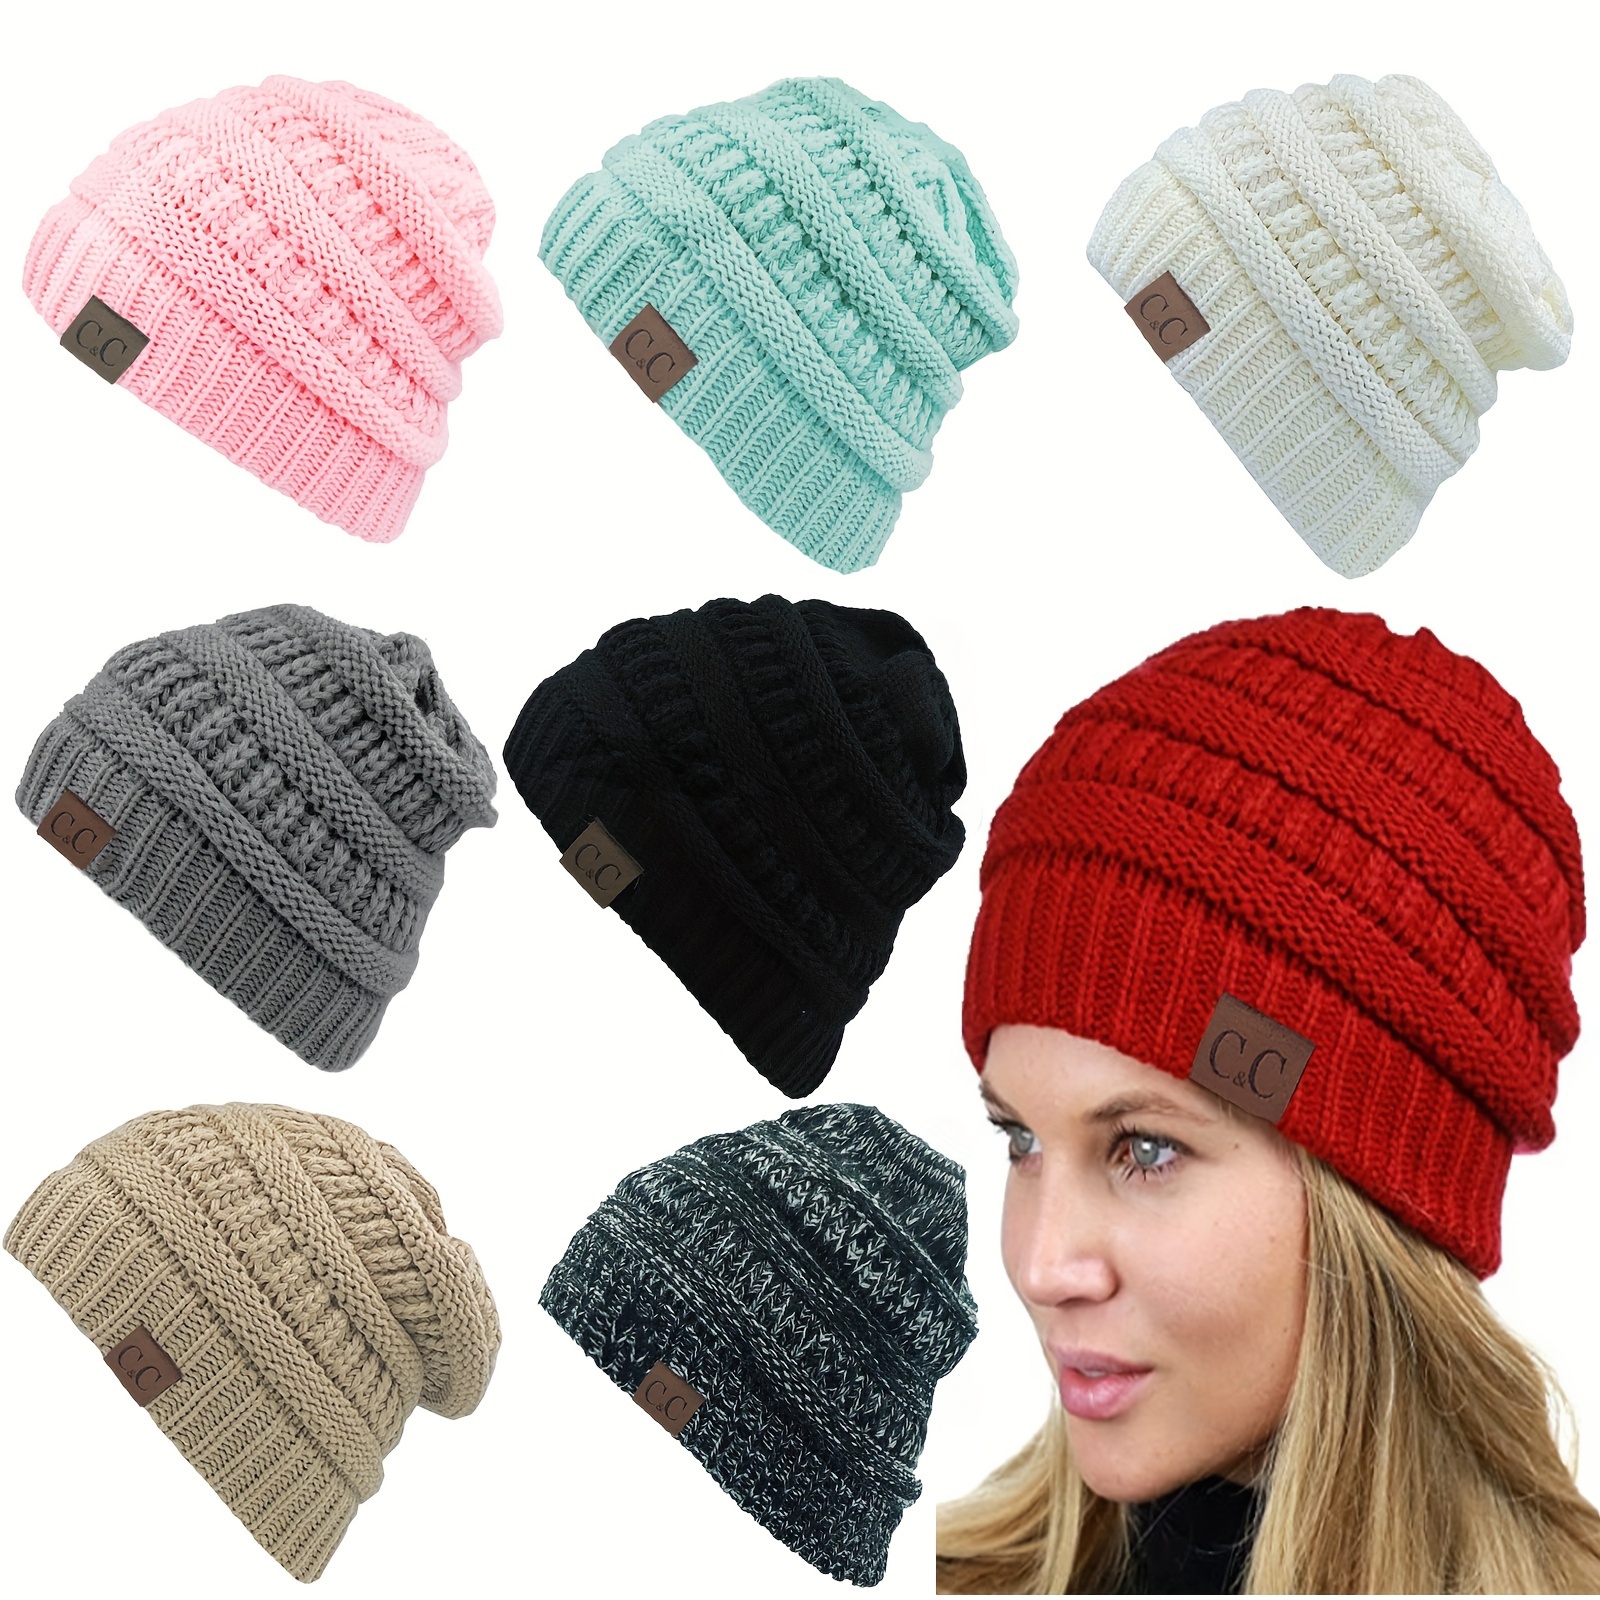 Bonnet d'hiver ample surdimensionné – Bonnet en tricot épais doux